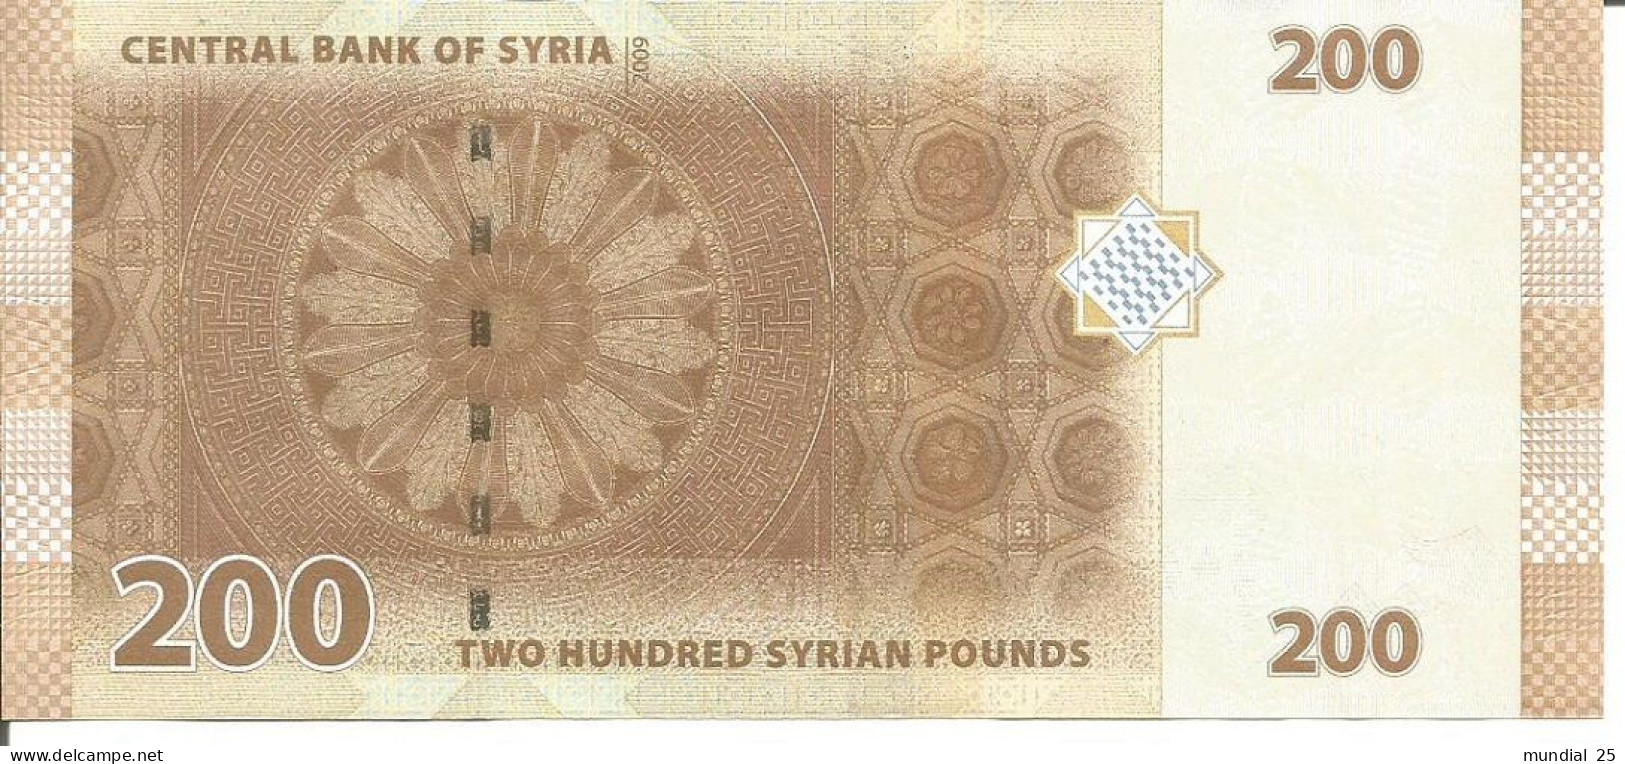 2 SYRIA NOTES 200 POUNDS 2009 - Siria